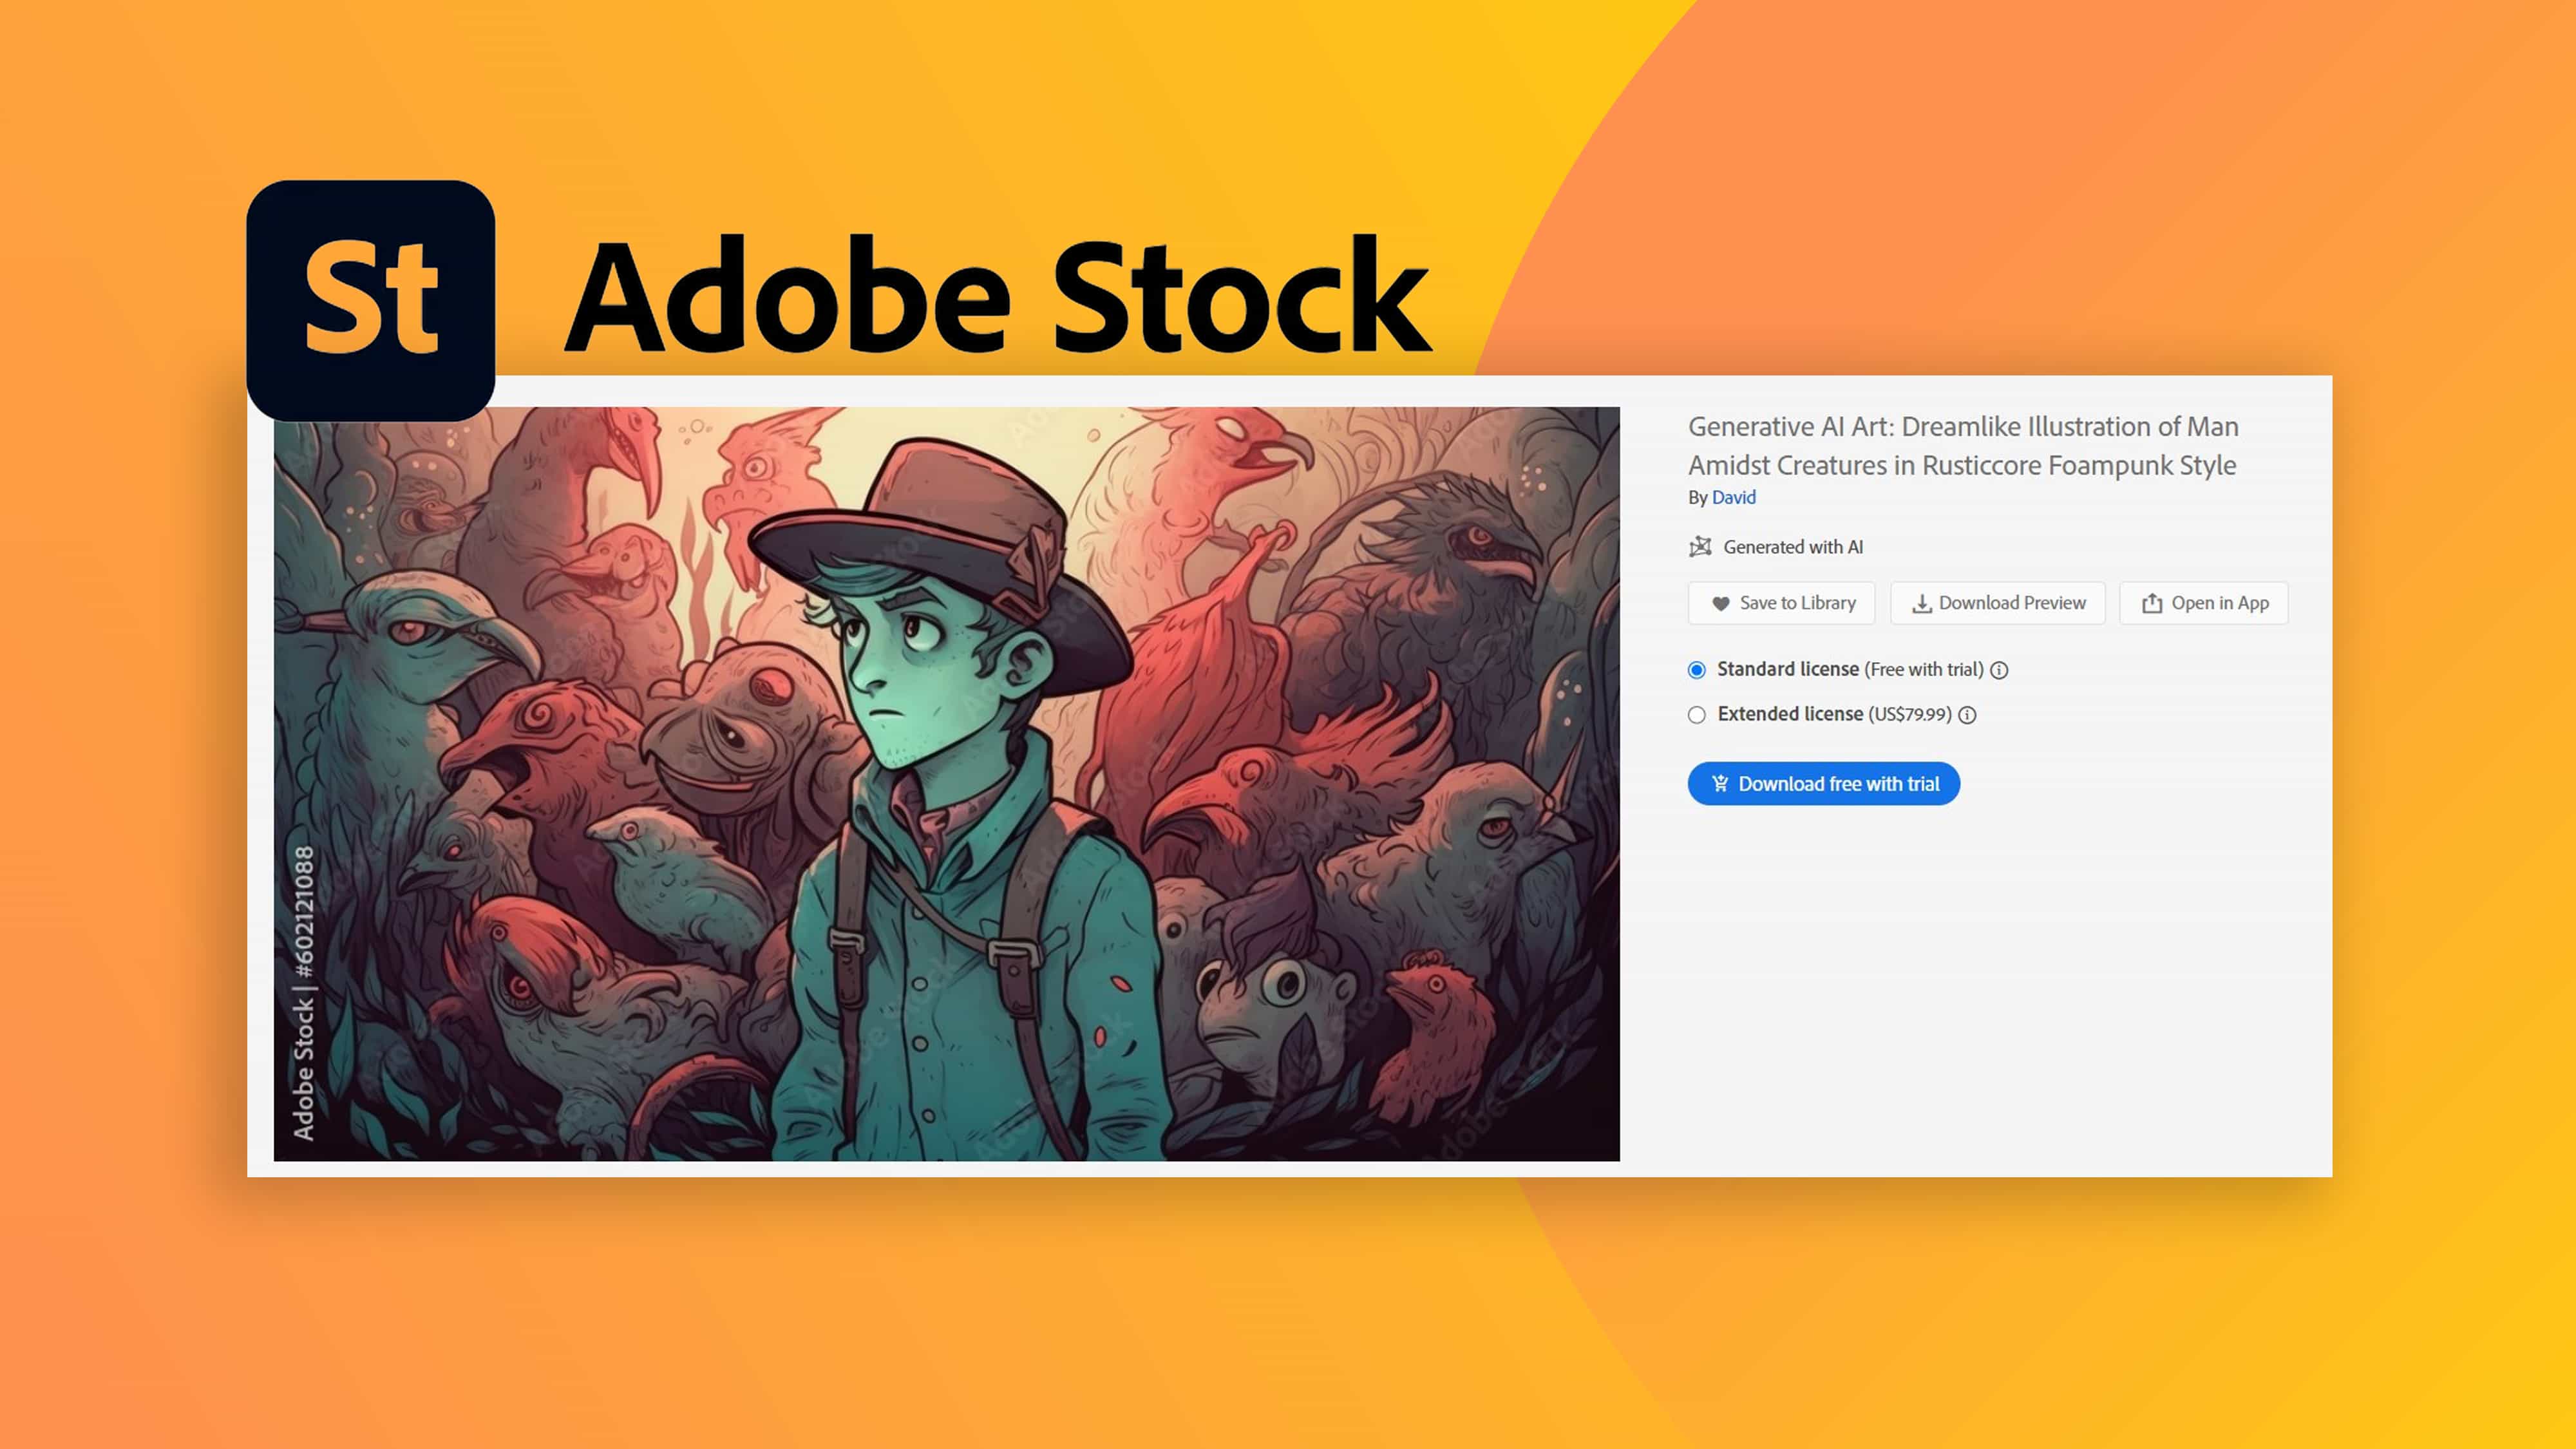 Los artistas se quejan de la "infracción de derechos de autor" de la IA en Adobe Stock